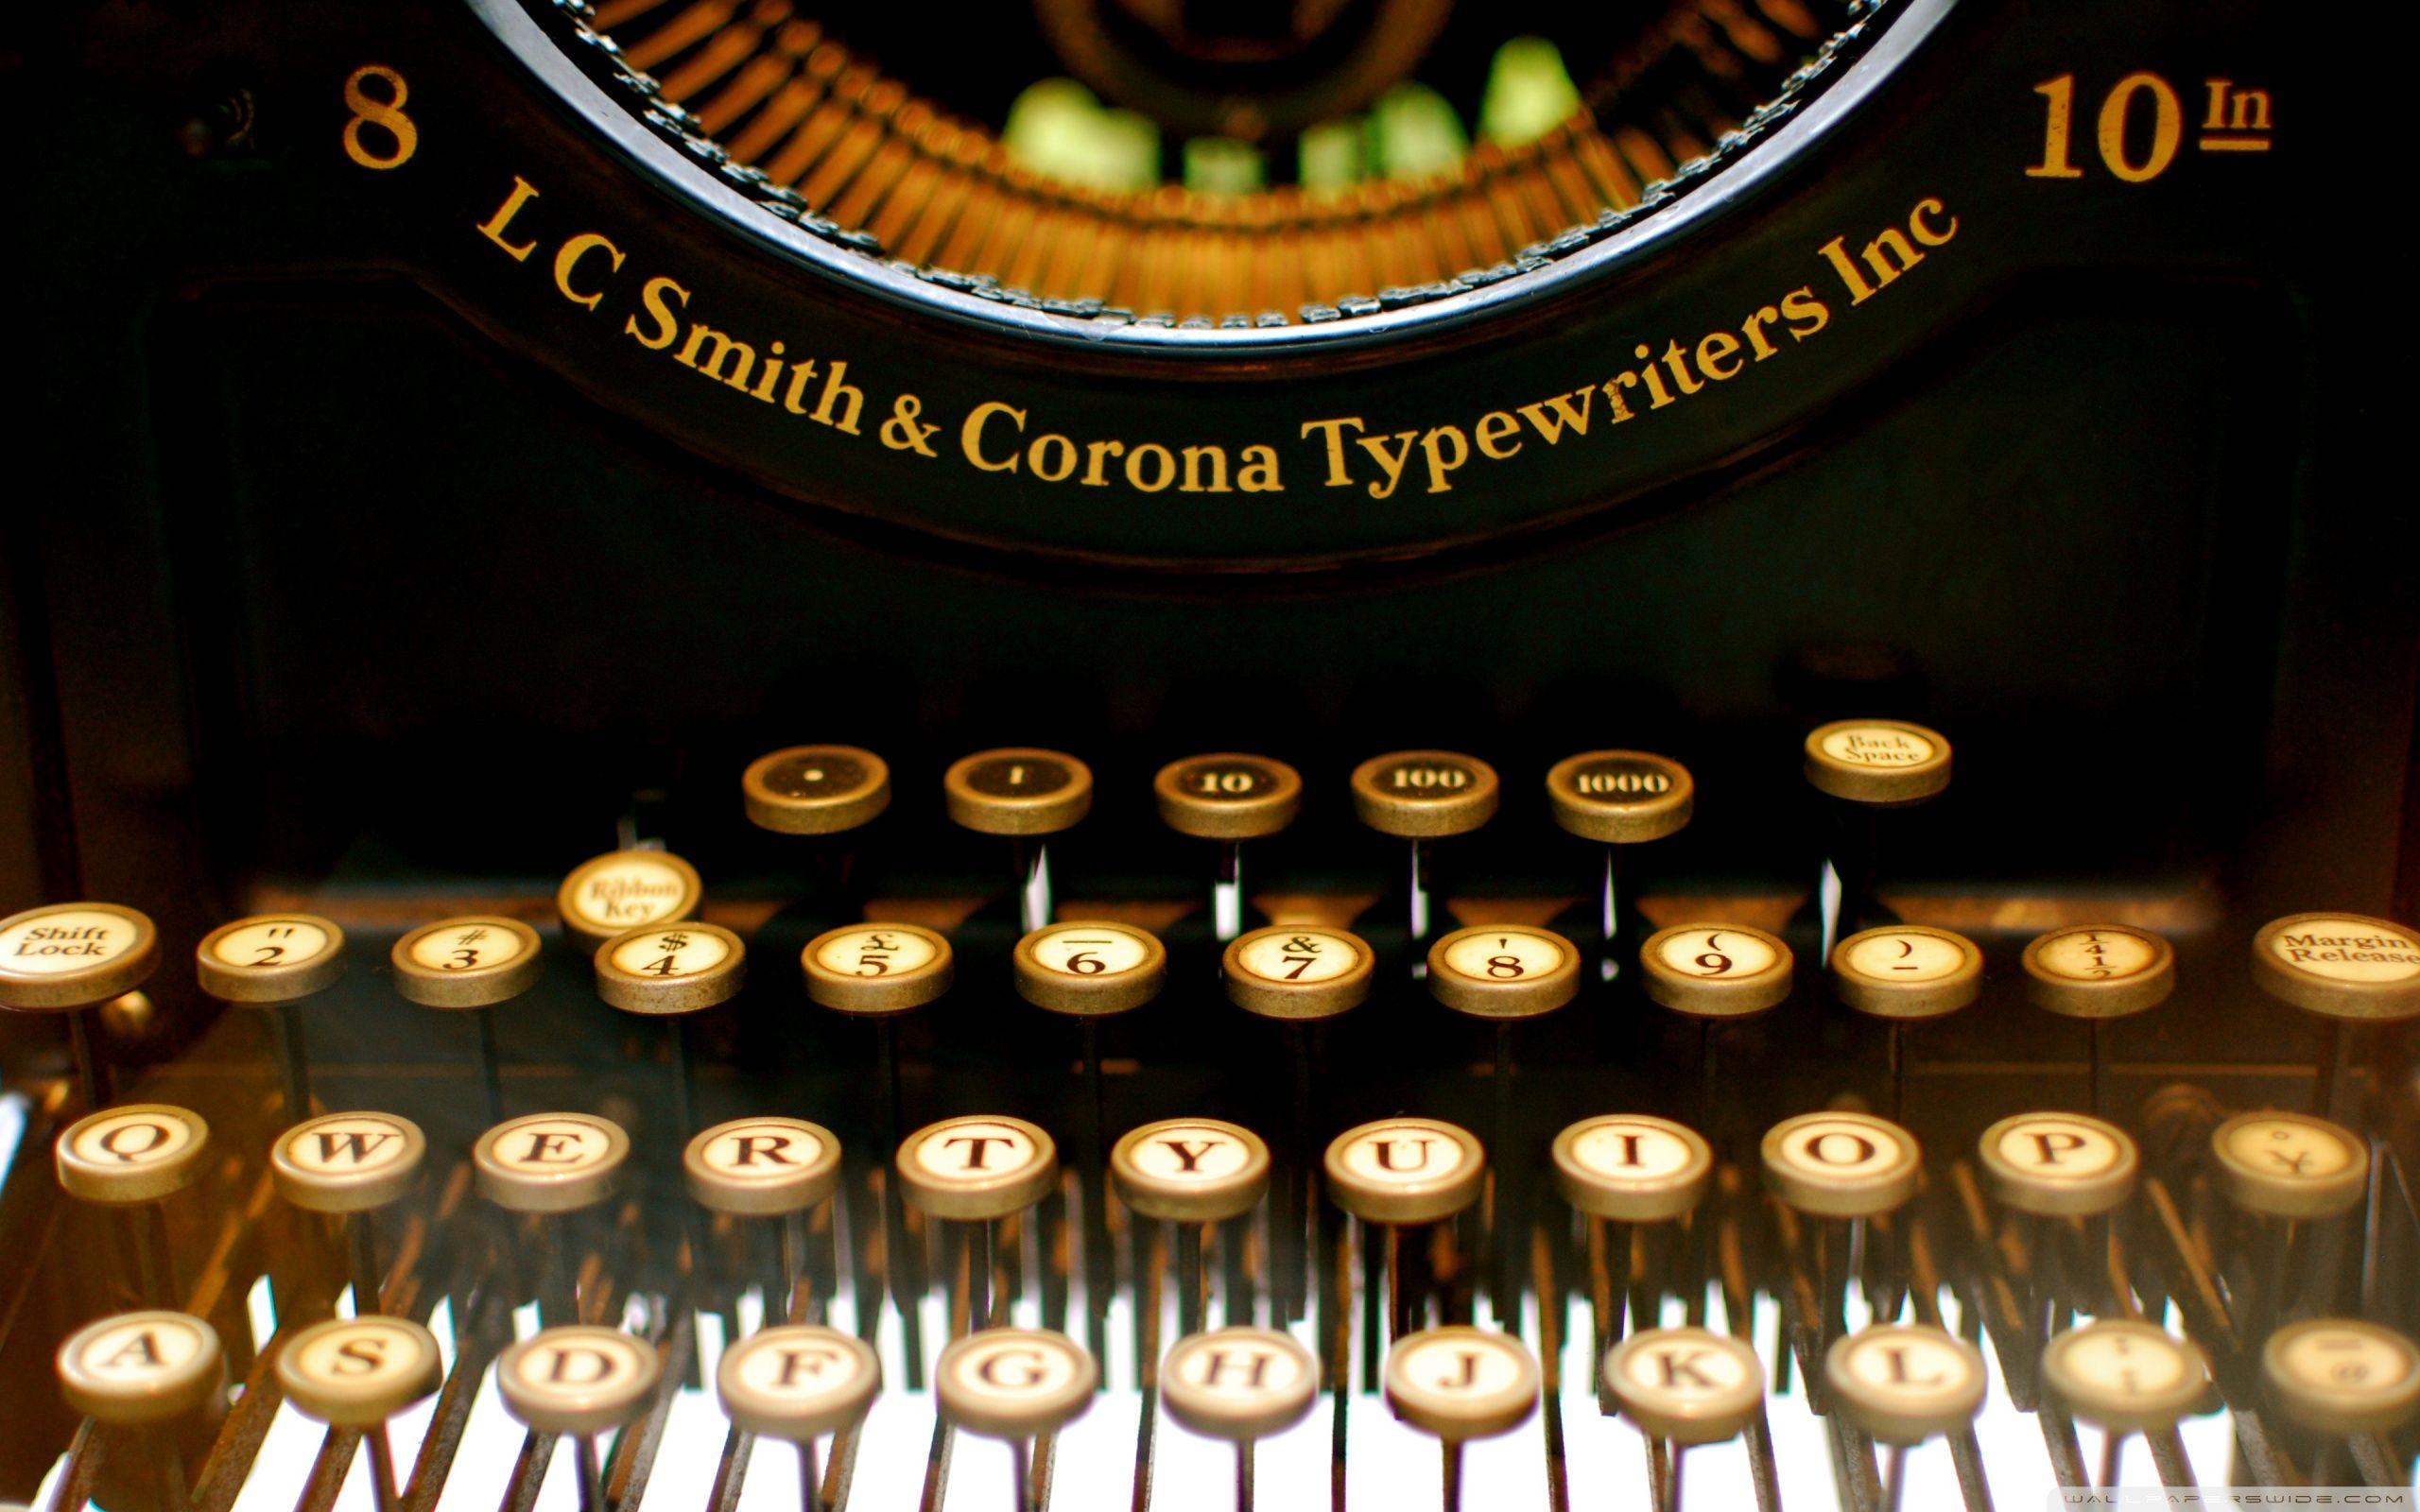 Typewriter HD desktop wallpaper, Fullscreen, Mobile, Dual Monitor